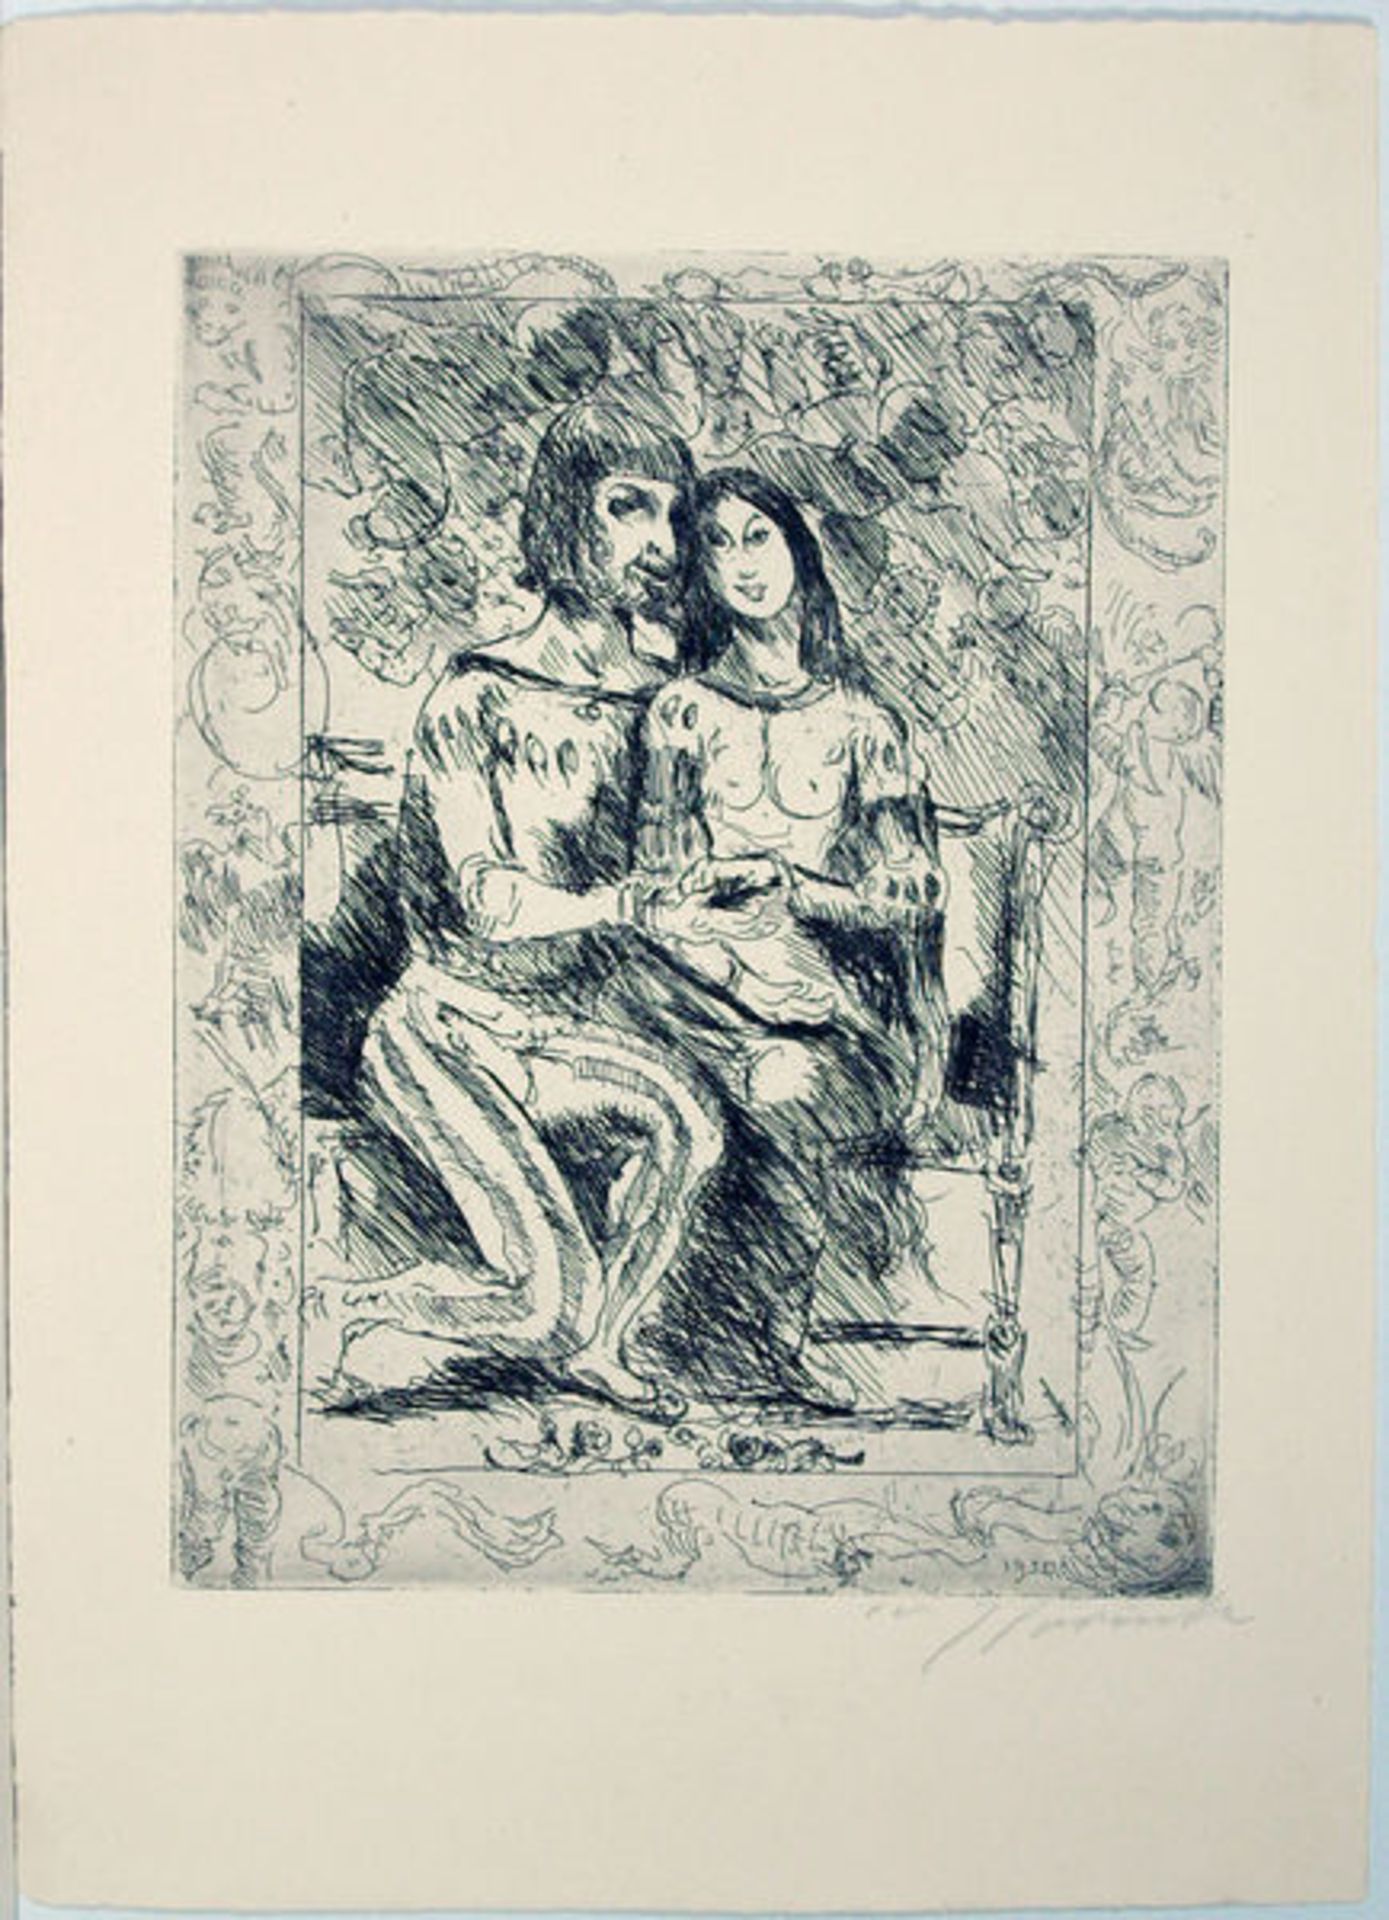 Corinth, Lovis
Radierung auf Zanders Velin mit Wasserzeichen, 27,7 × 21,7 cm.
Weislingen und